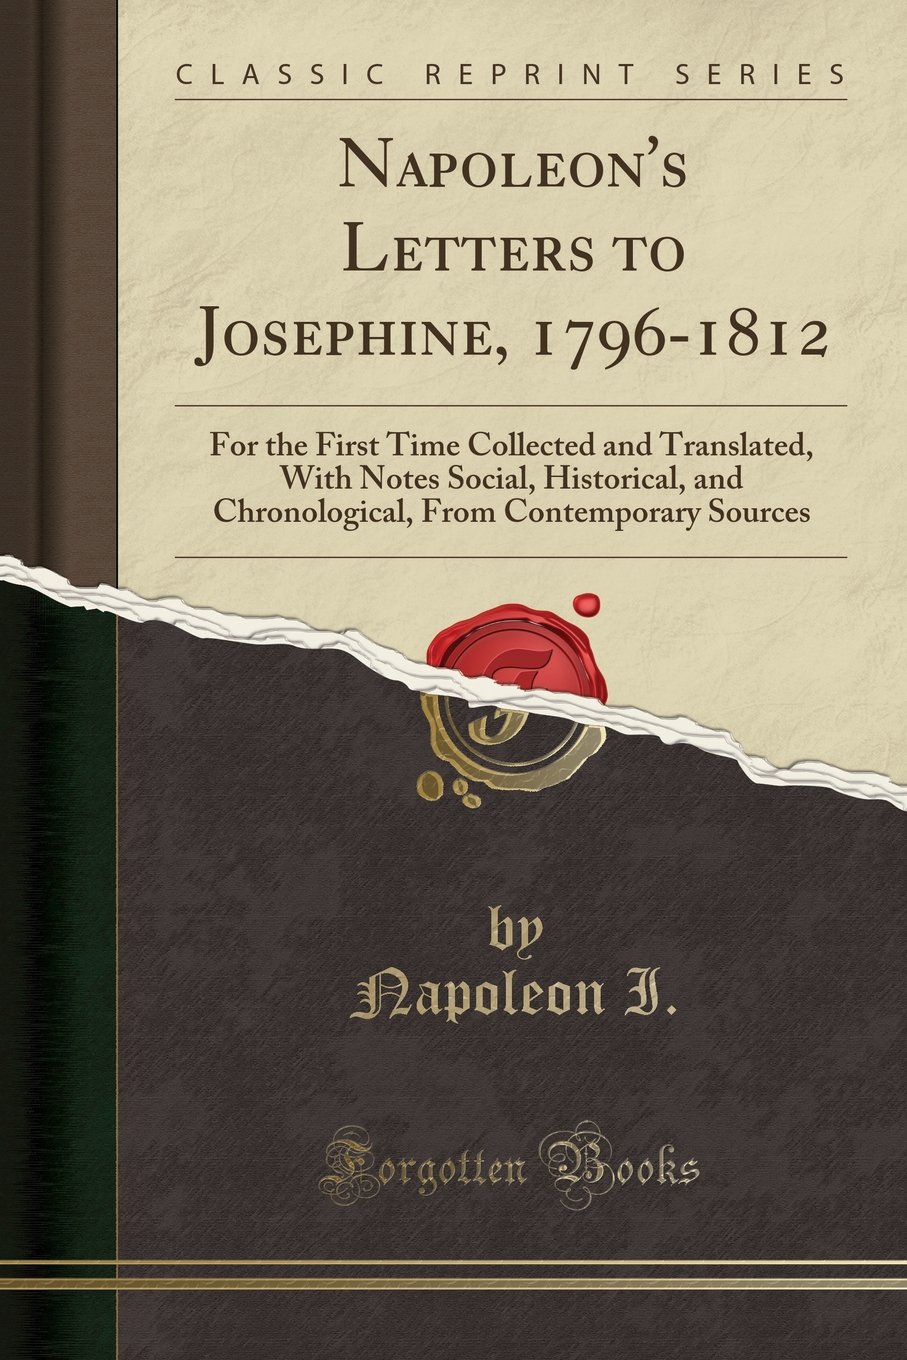 Napoleon's letters to Josephine 1796-1812